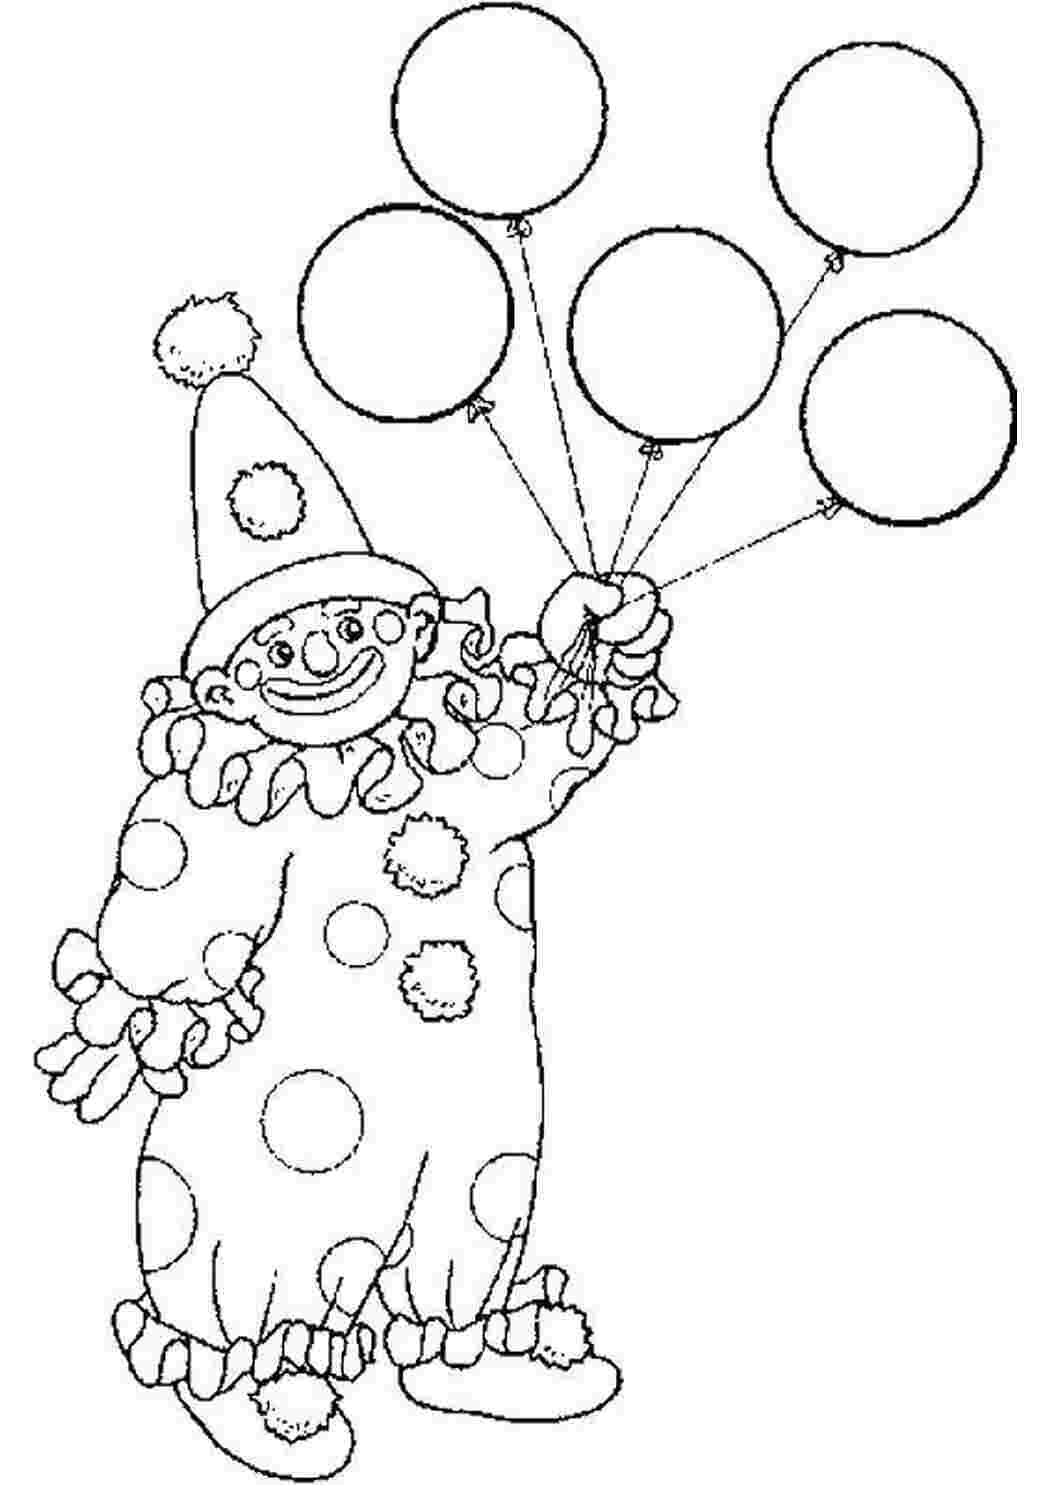 Раскраска клоун для детей 3 4 лет. Клоун раскраска. Раскраска клоун с шариками. Клоун раскраска для детей. Клоун для раскрашивания детям.